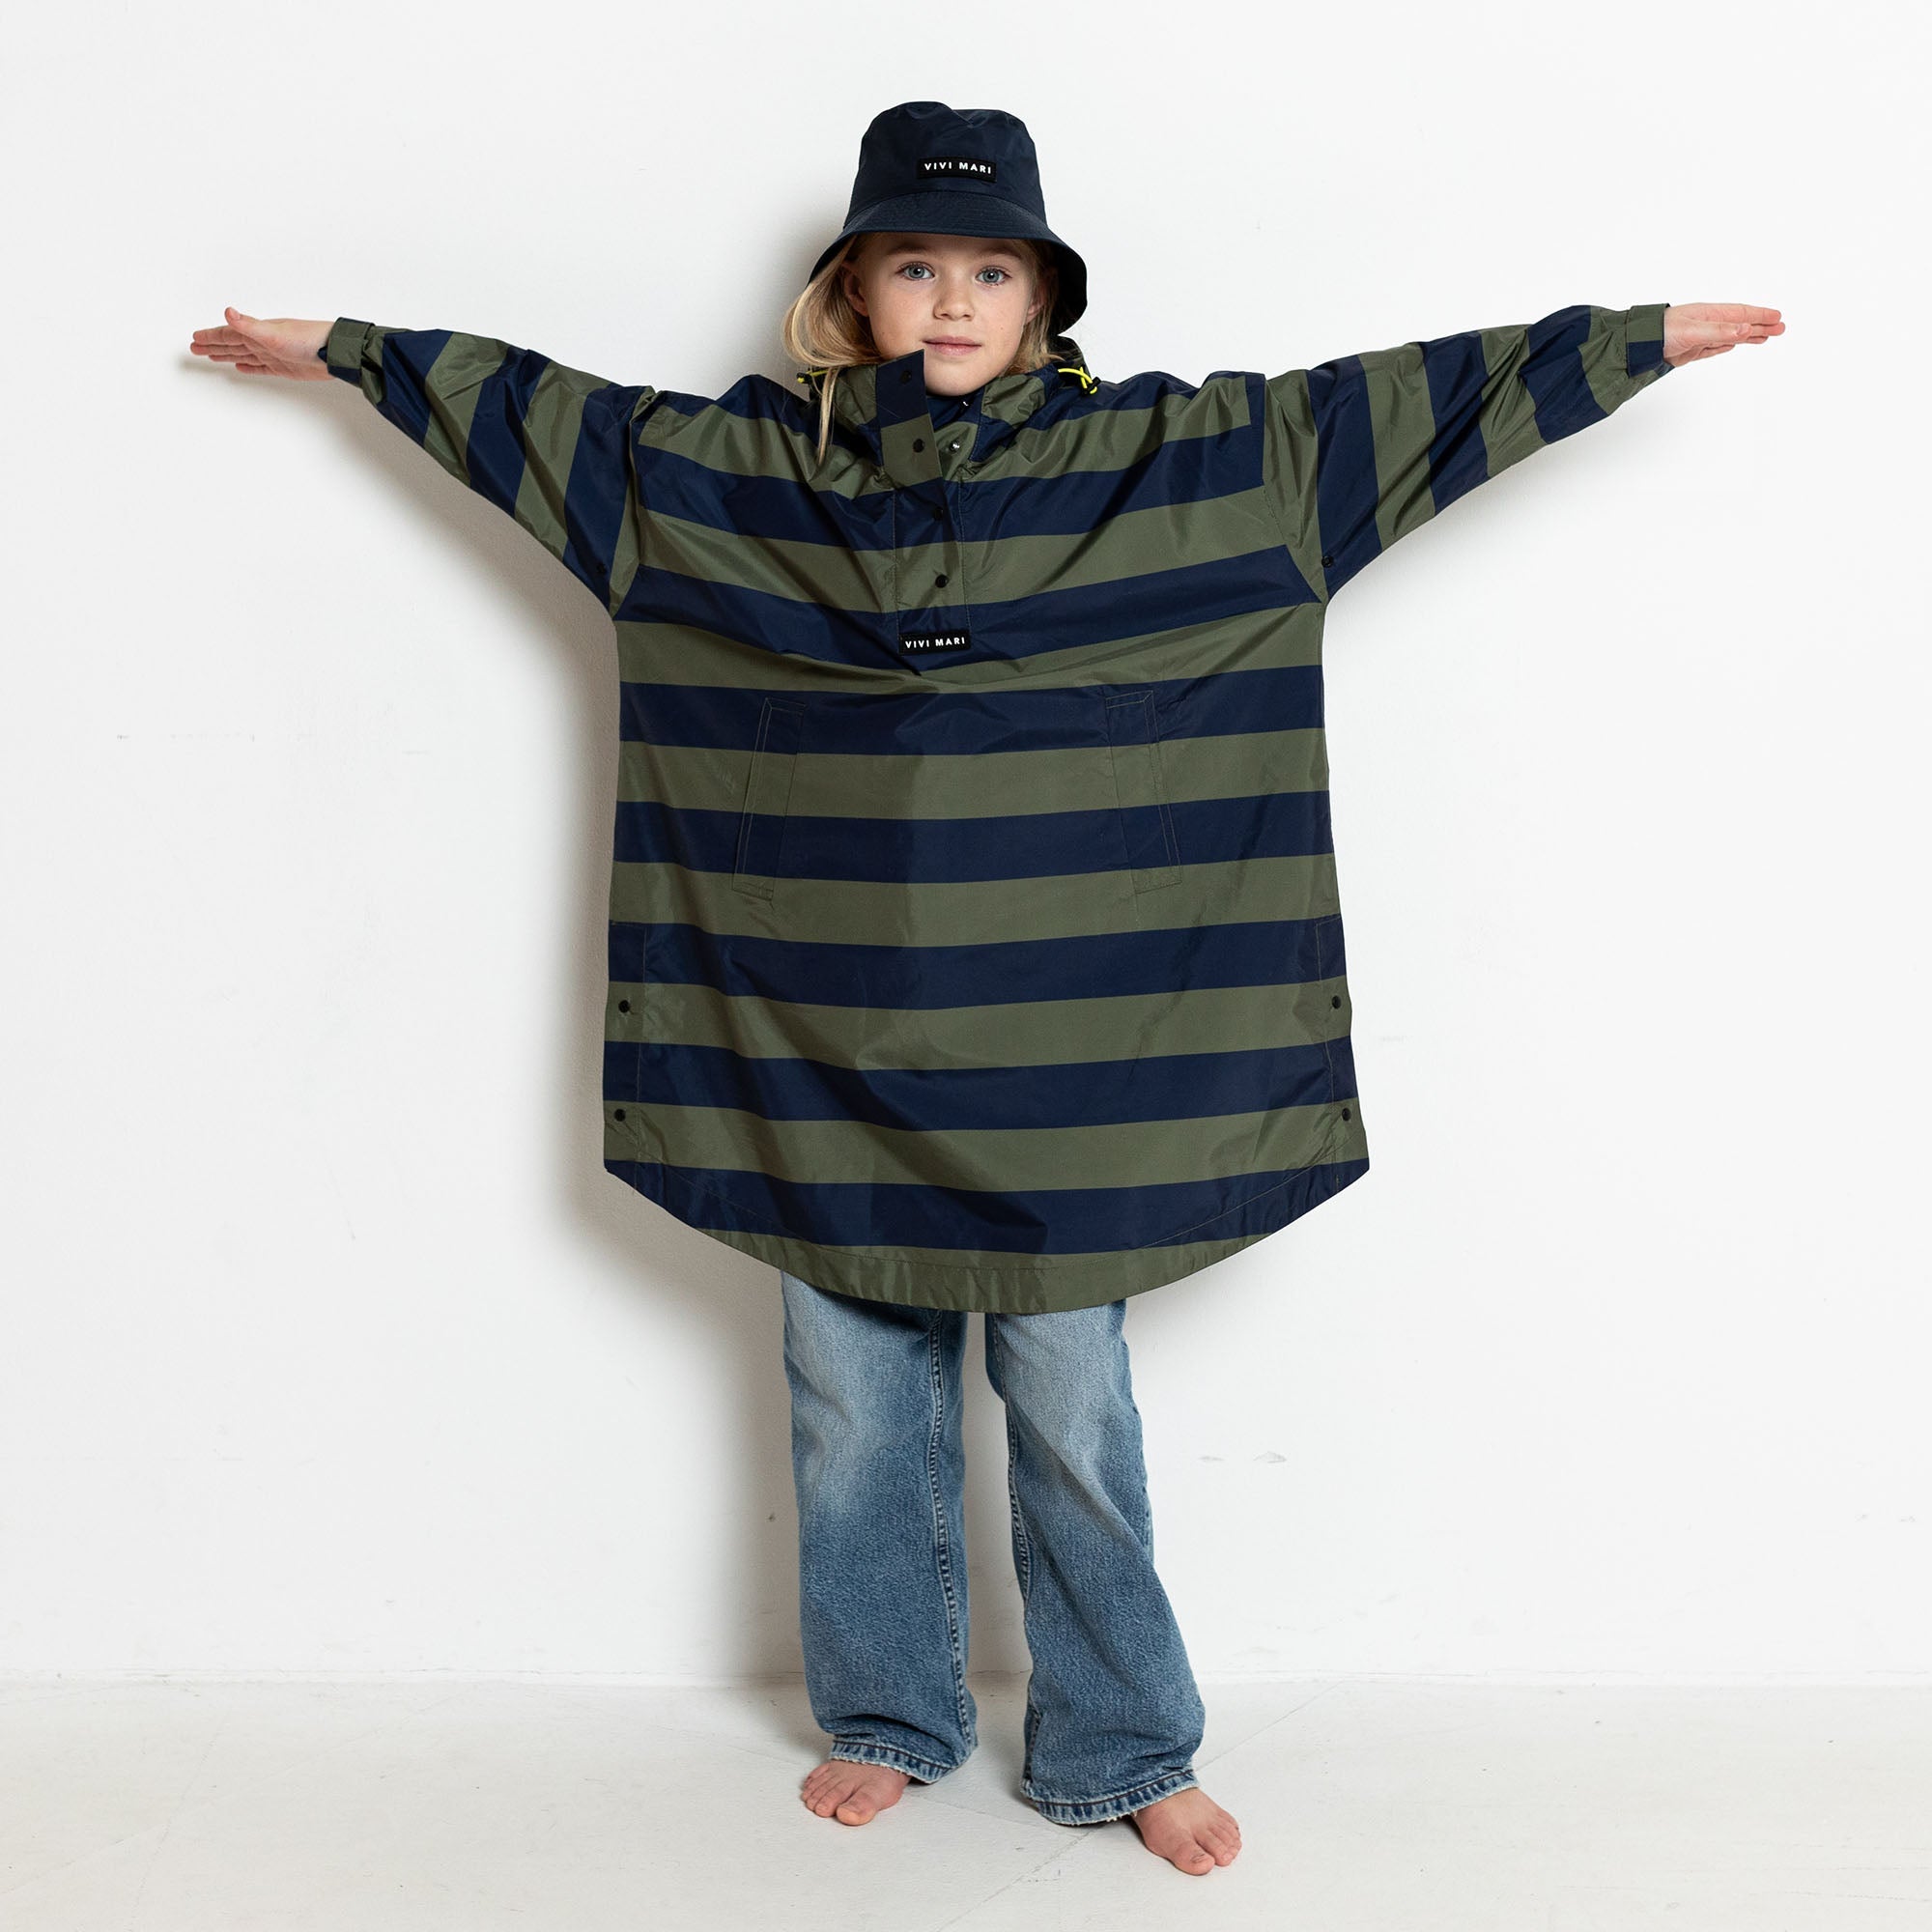 Kids Raincoat bold stripes navy/olive - VIVI MARI